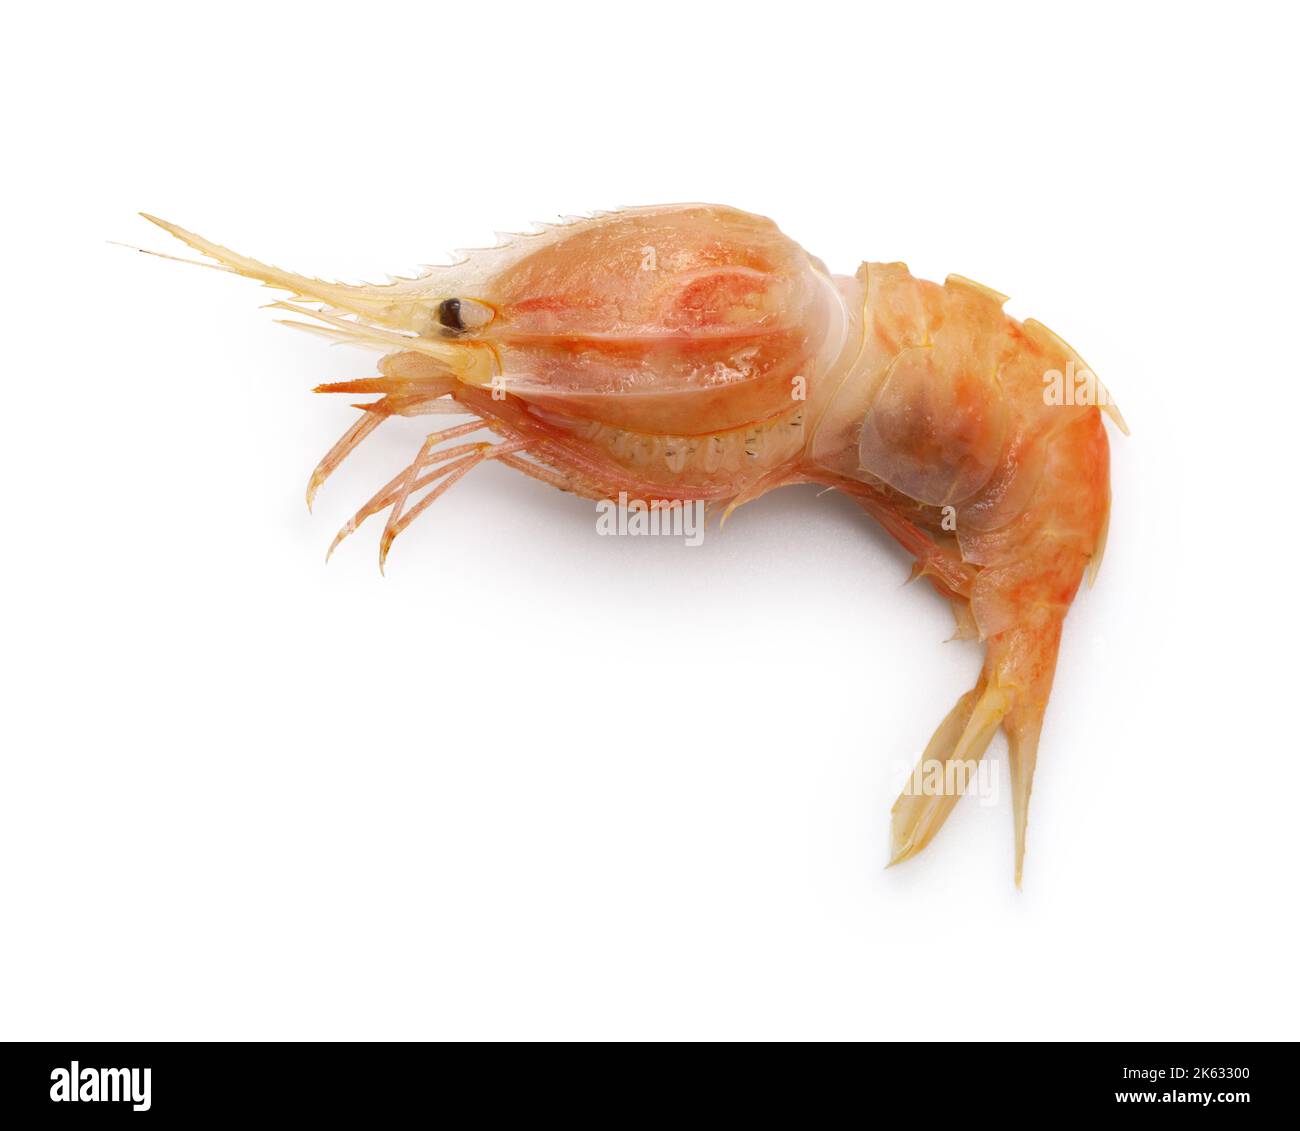 nylon shrimp(Heterocarpus hayashii Crosnier) isolated on white background Stock Photo